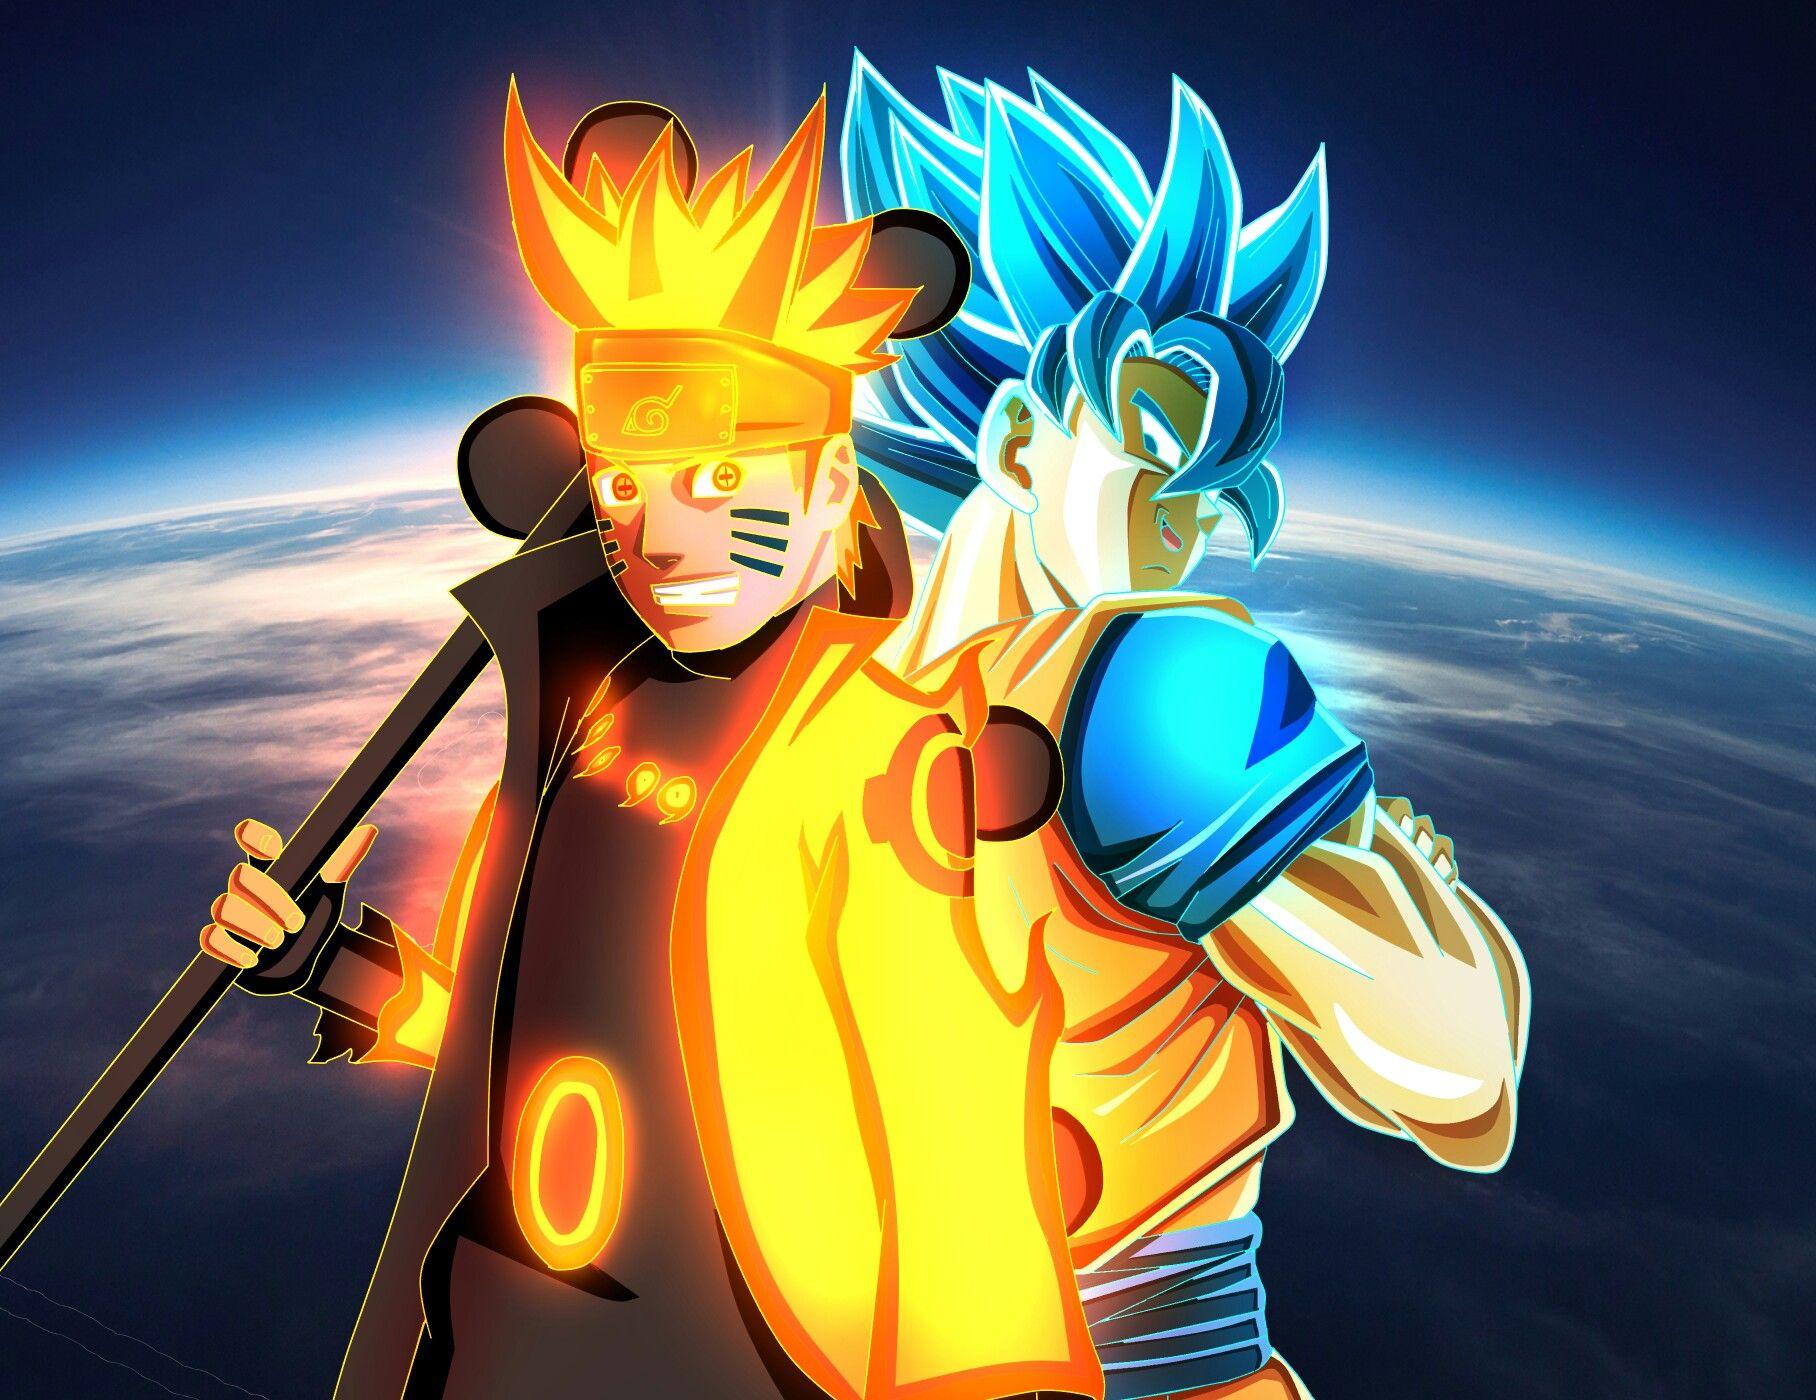 Naruto and Goku. Anime dragon ball super, Dragon ball super artwork, Anime wallpaper